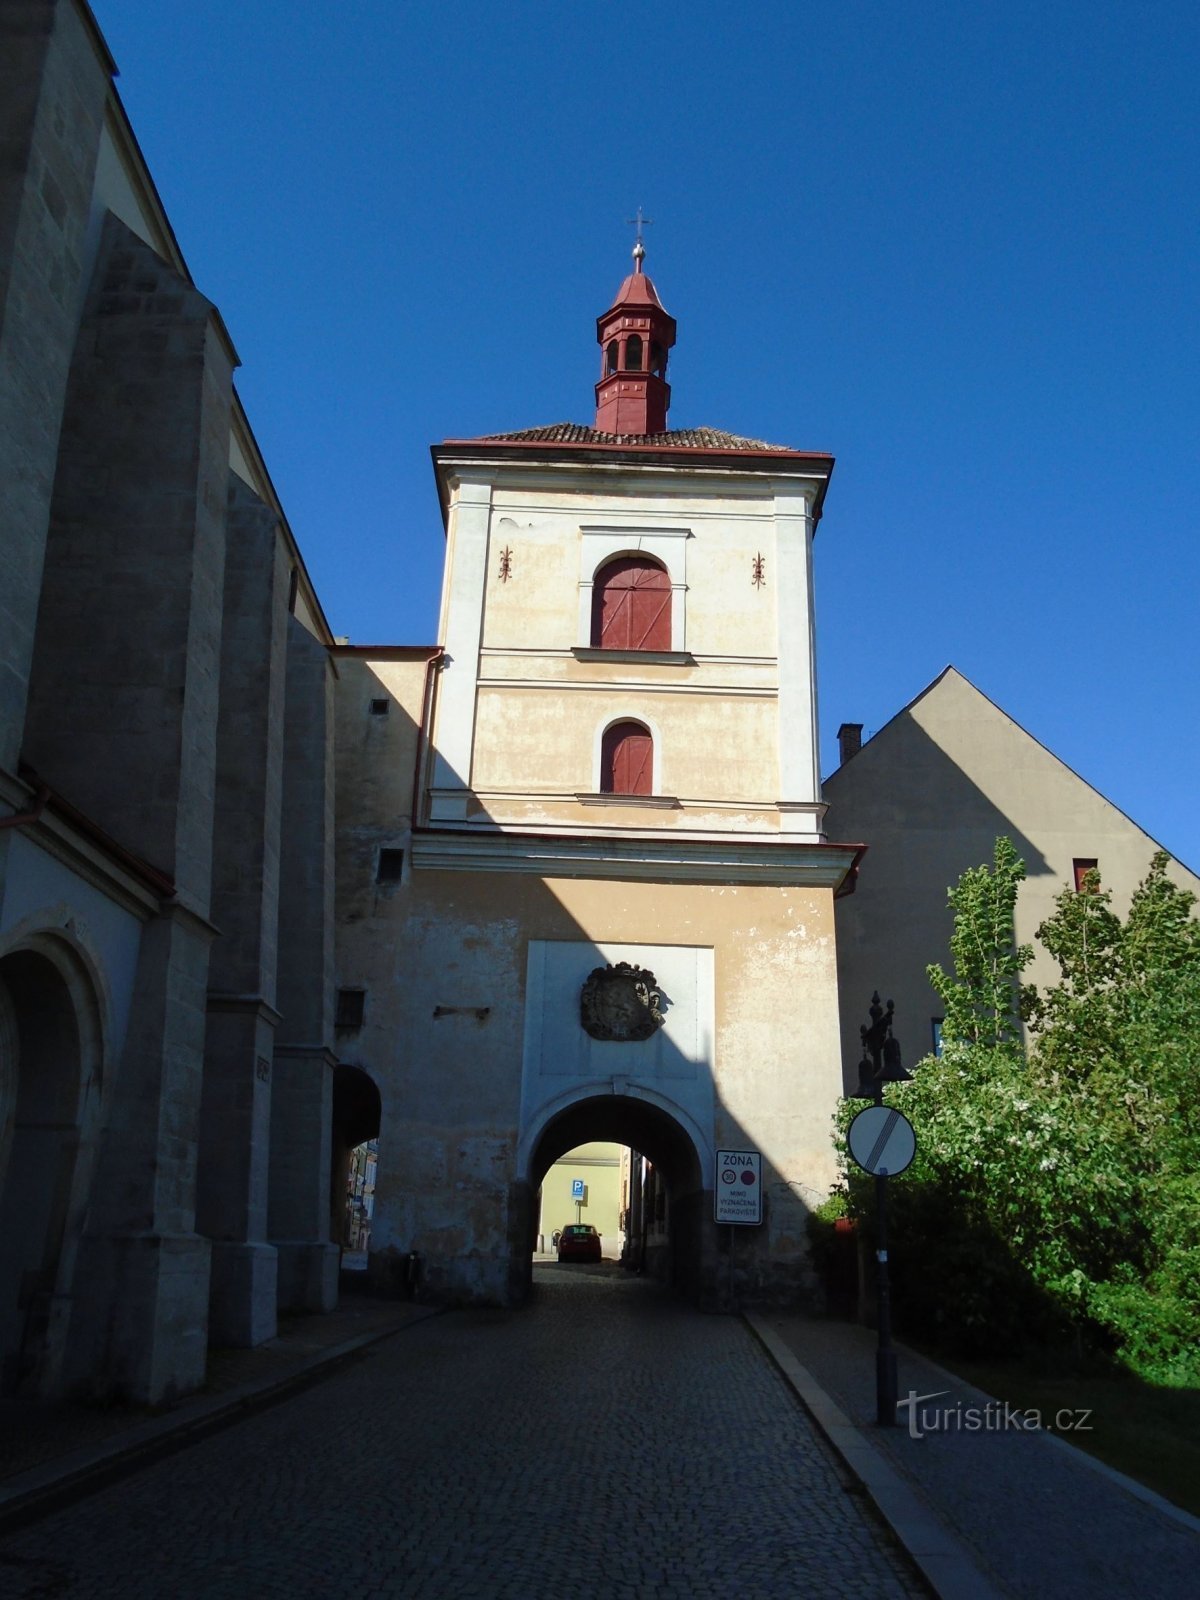 Porte de la ville avec clocher (Jaroměř, 13.5.2018/XNUMX/XNUMX)